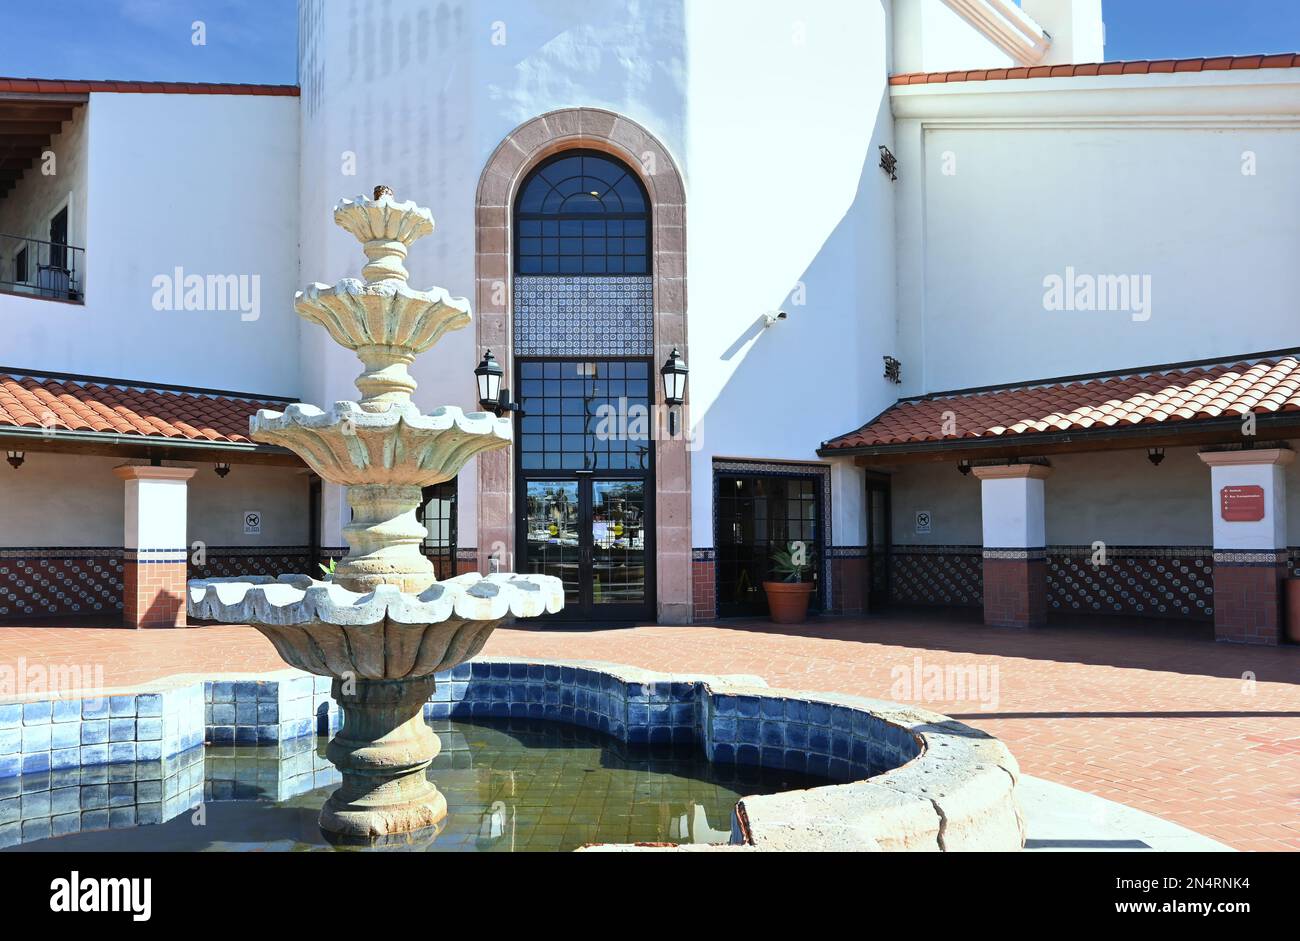 SANTA ANA, CALIFORNIA - 1 FEB 2023: Fountain and entrance to the Santa Ana Regional Transportation Center. Stock Photo